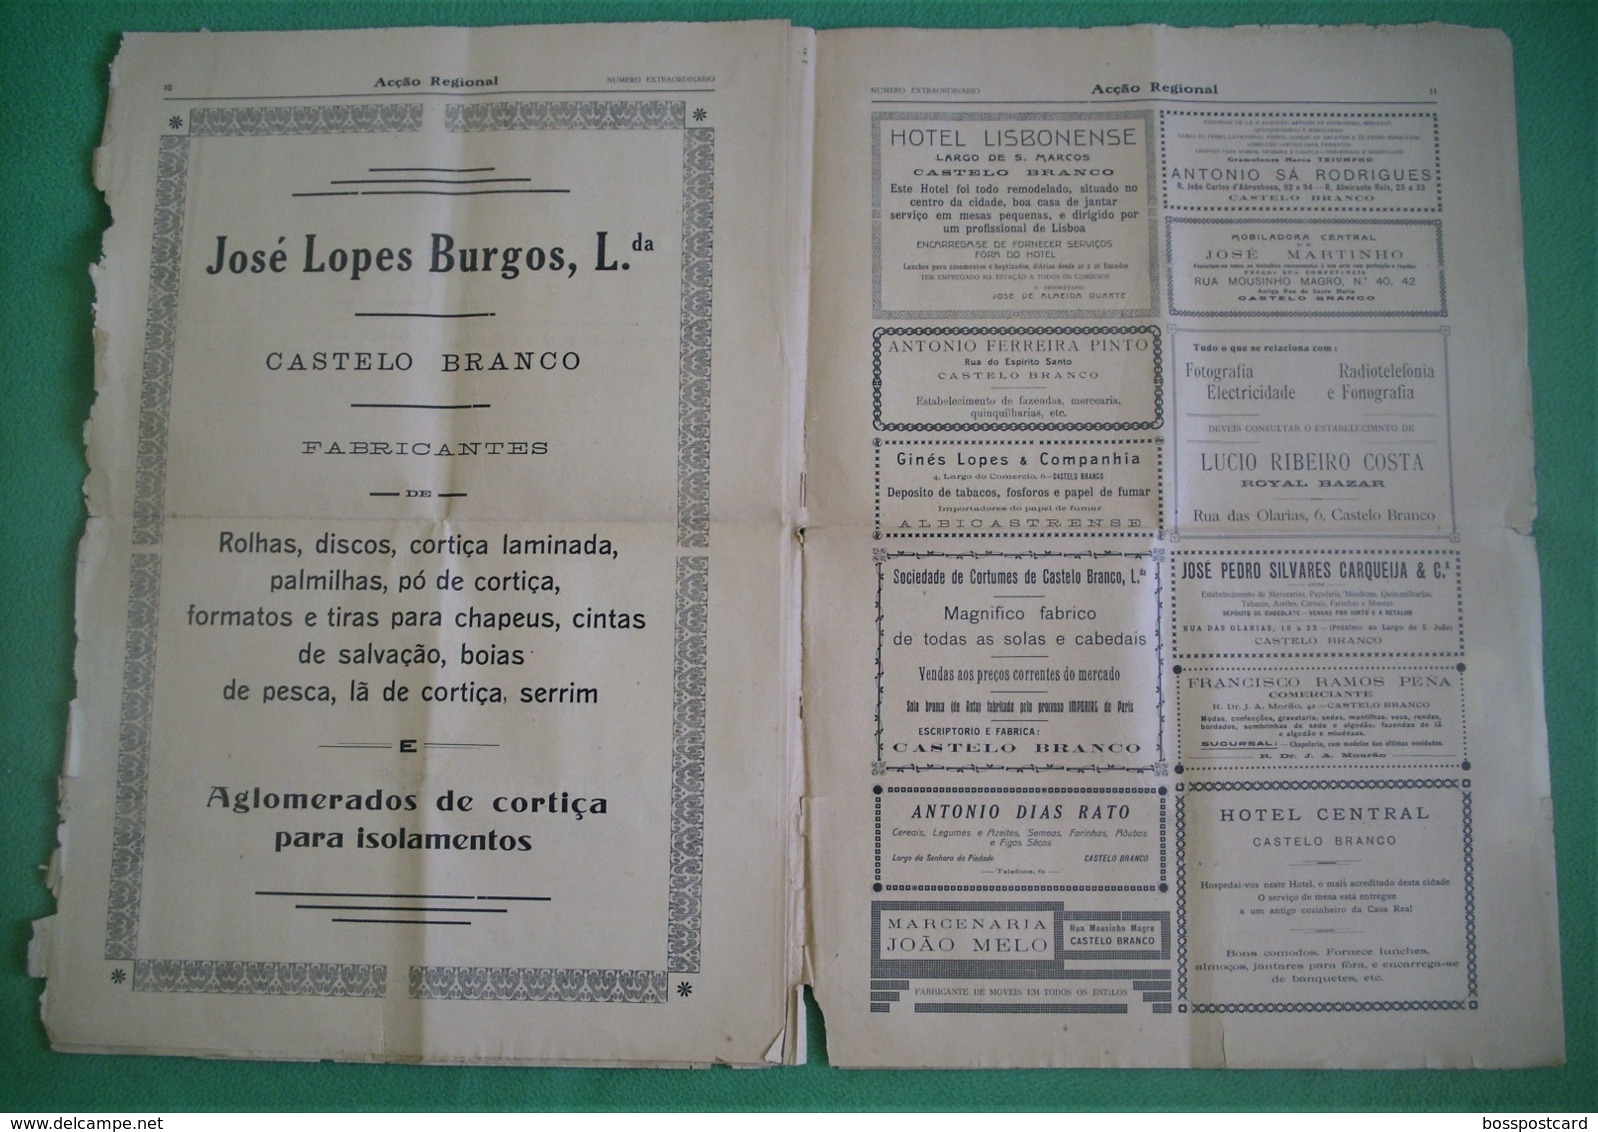 Castelo Branco - Jornal Acção Regional de Junho de 1929 - Congresso das Beiras - Imprensa